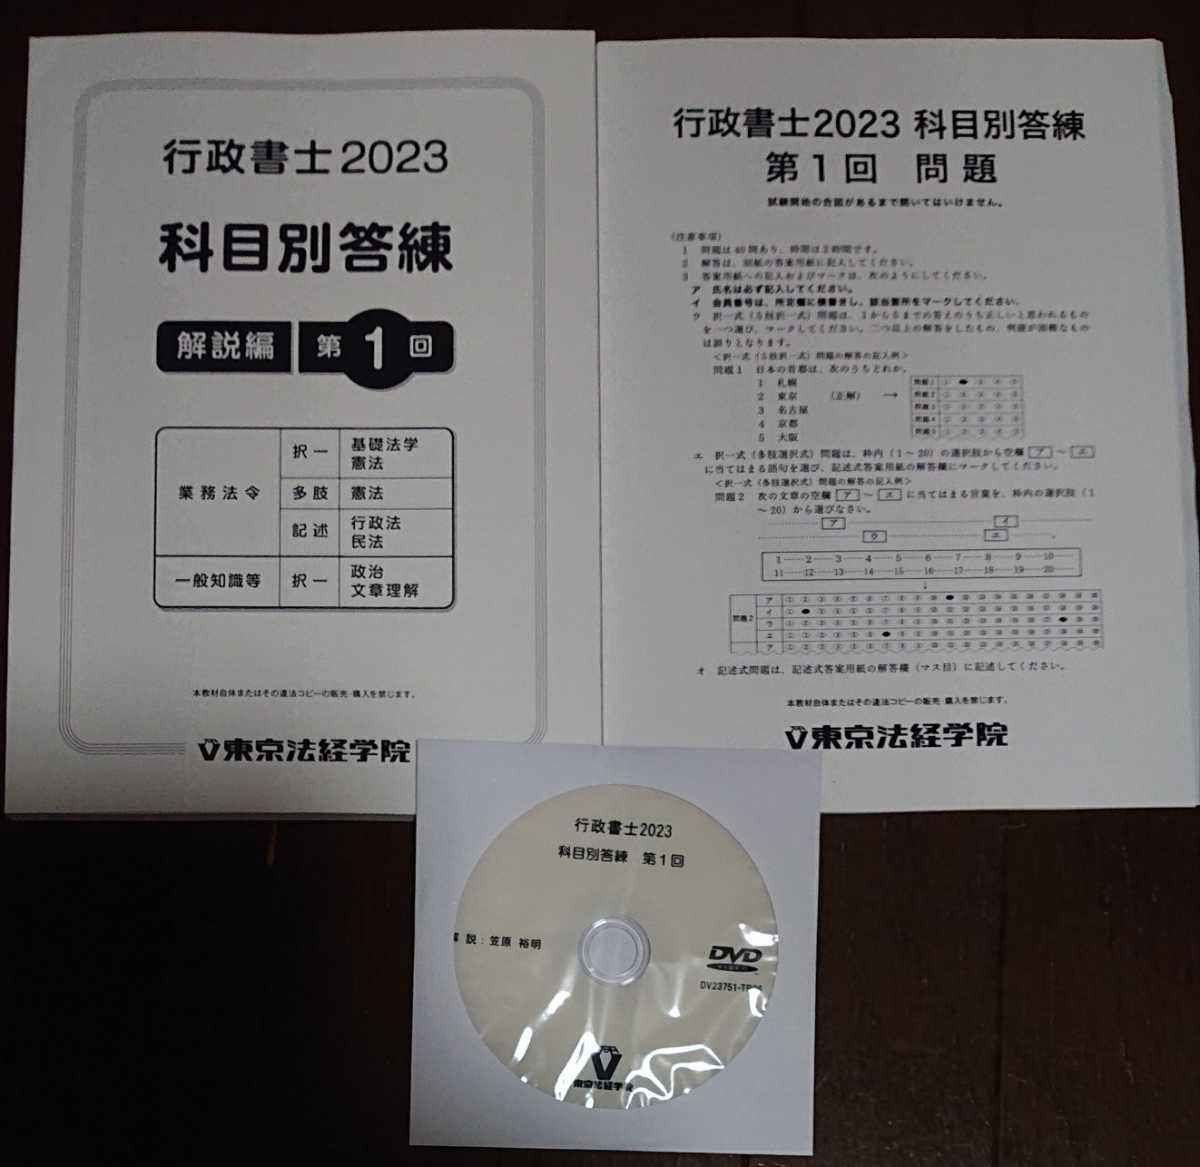 豪奢な 東京法経学院 2023年合格目標 【最新】 行政書士 DVD1枚完備